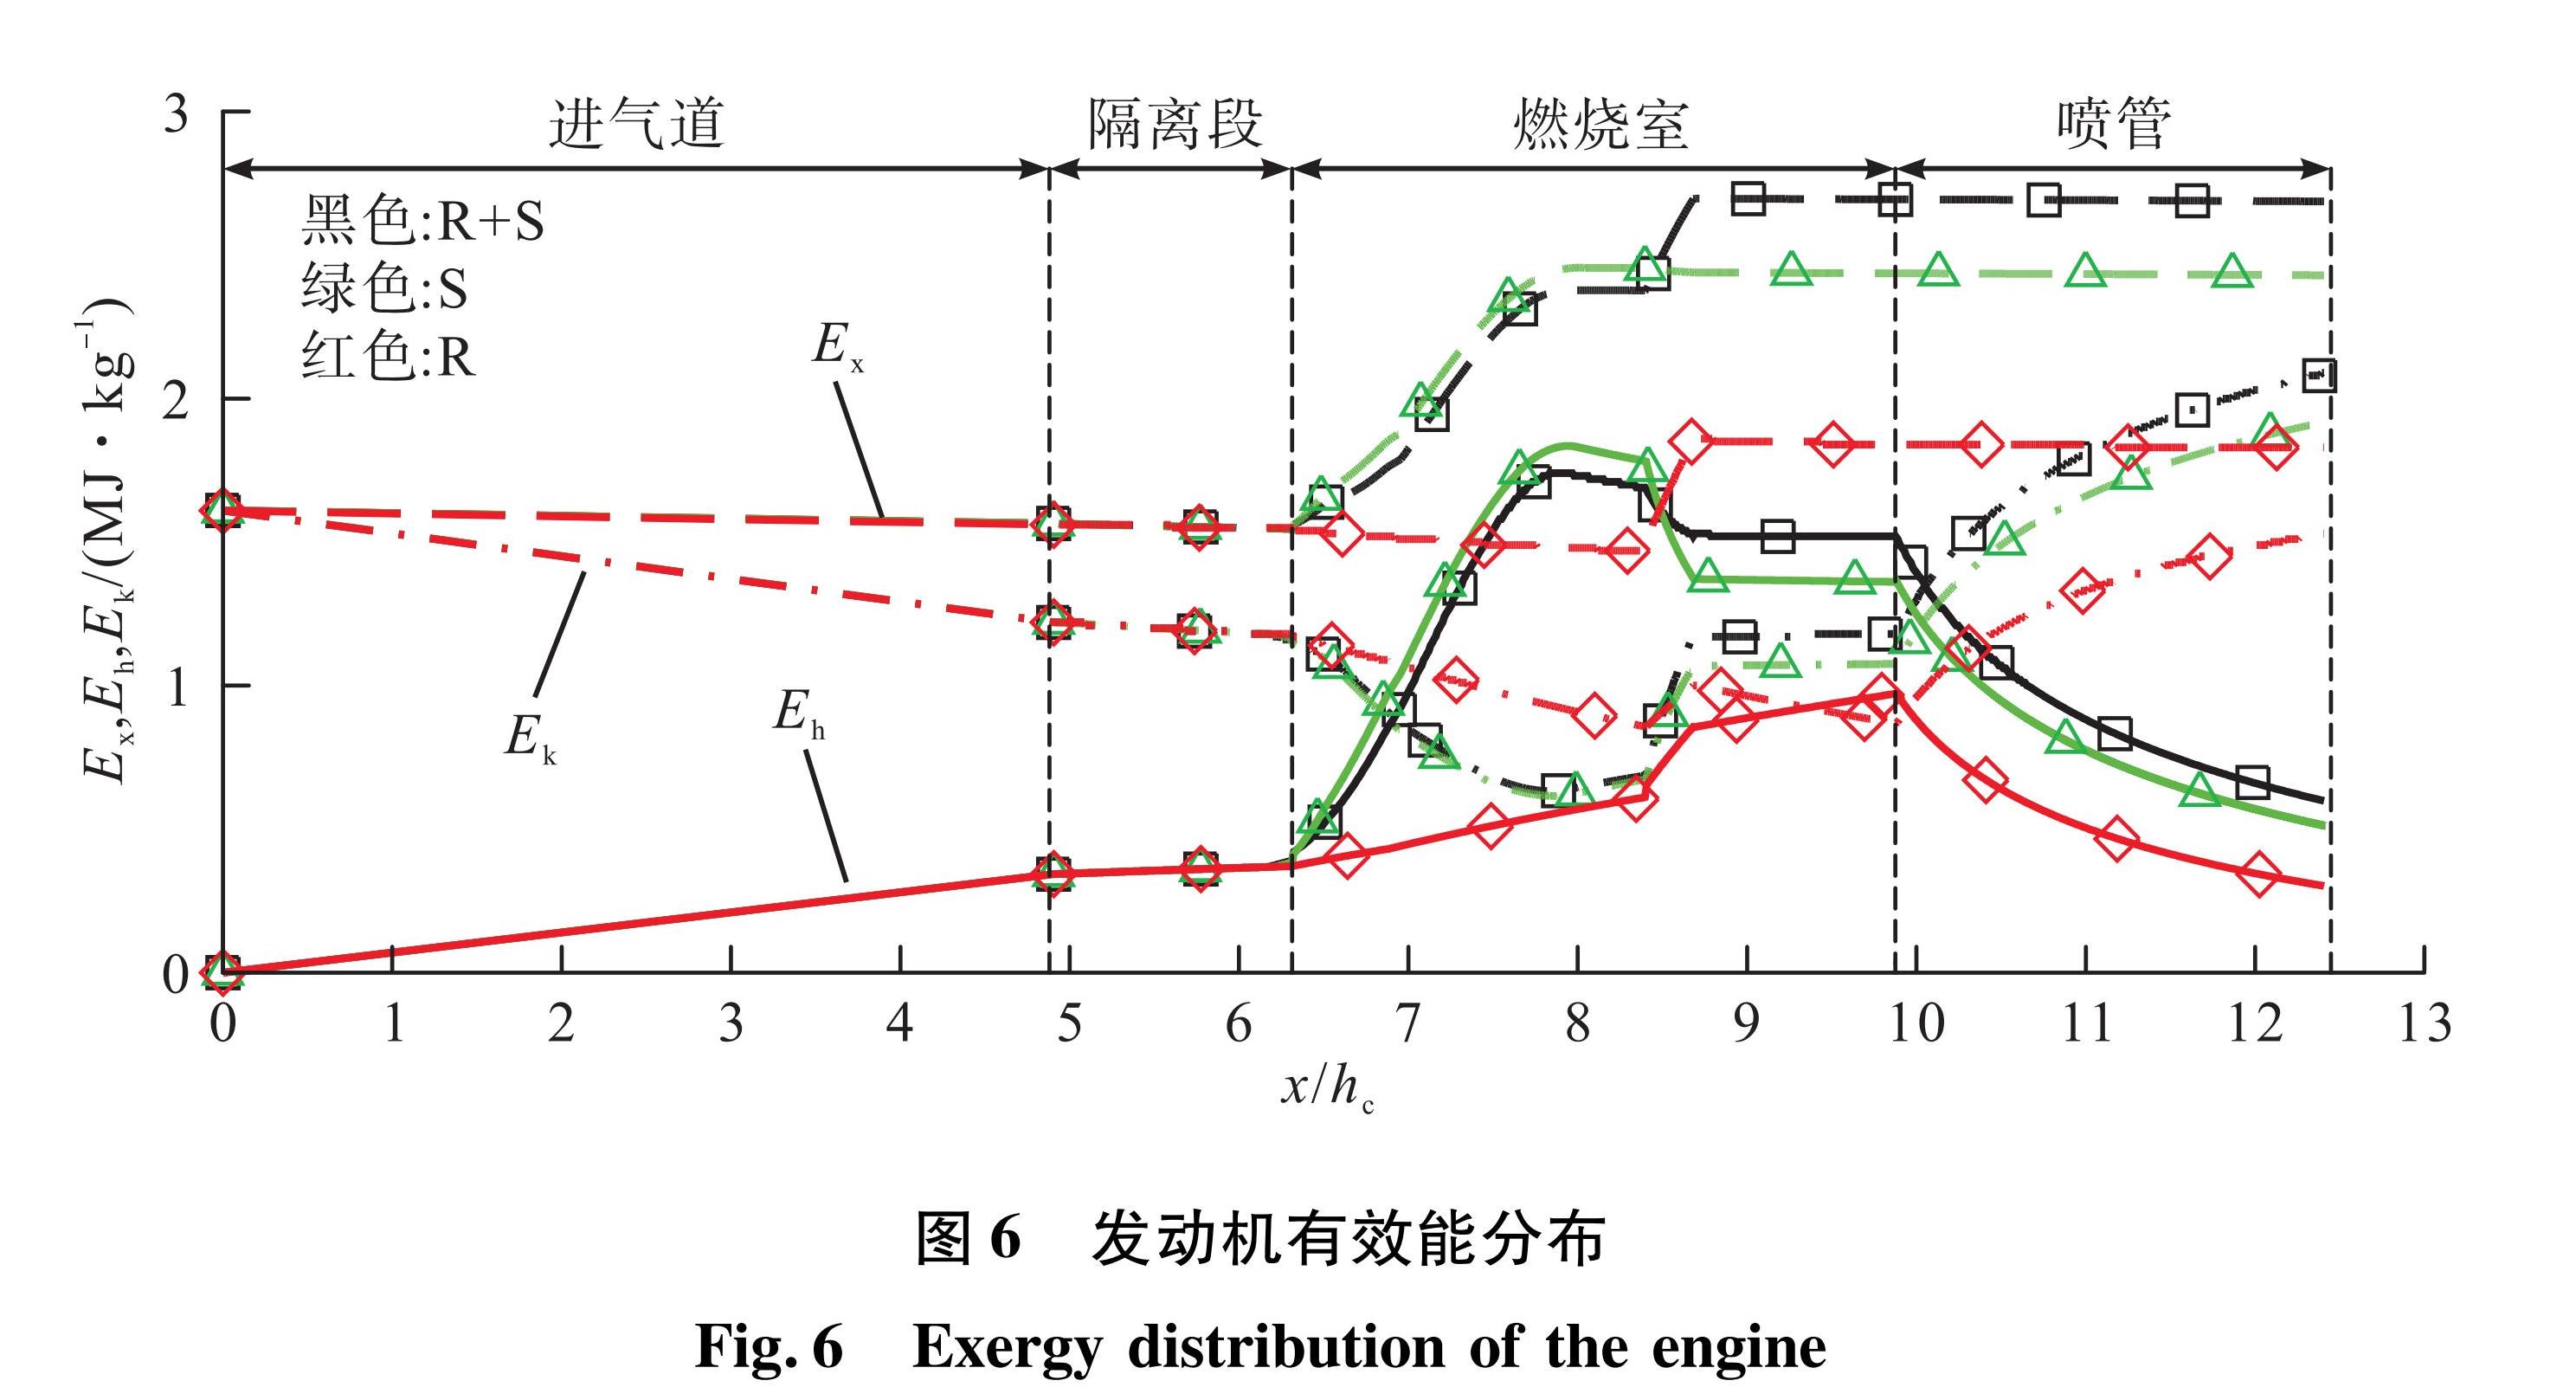 图6 发动机有效能分布<br/>Fig.6 Exergy distribution of the engine